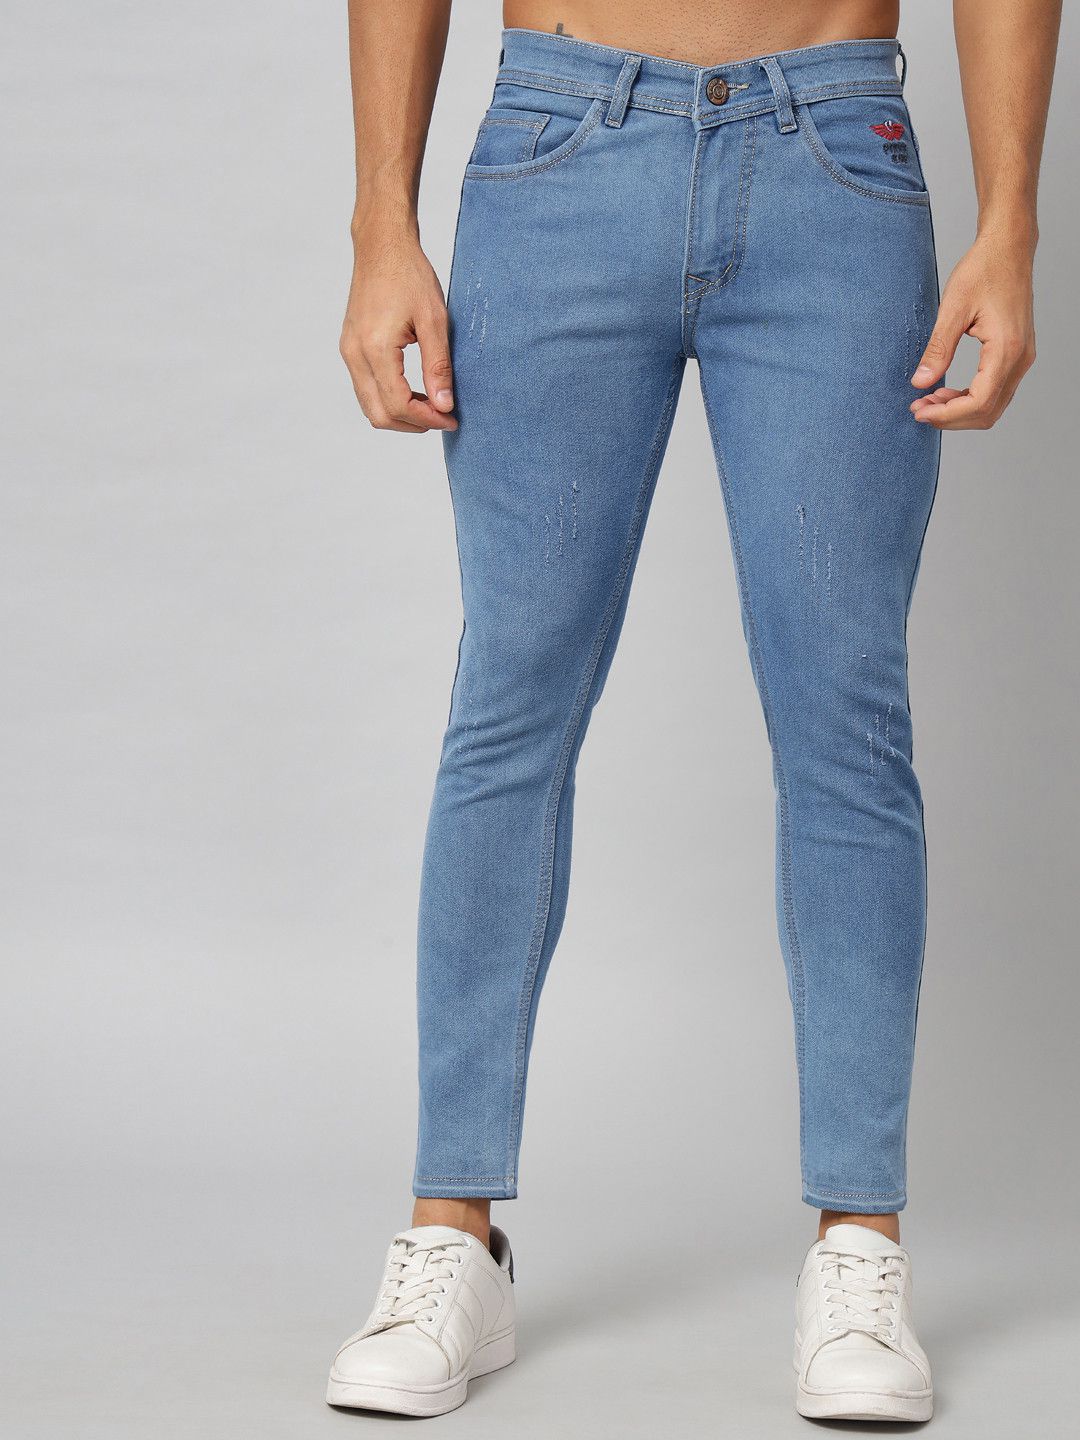 PODGE - Blue Denim Slim Fit Men's Jeans ( Pack of 1 )